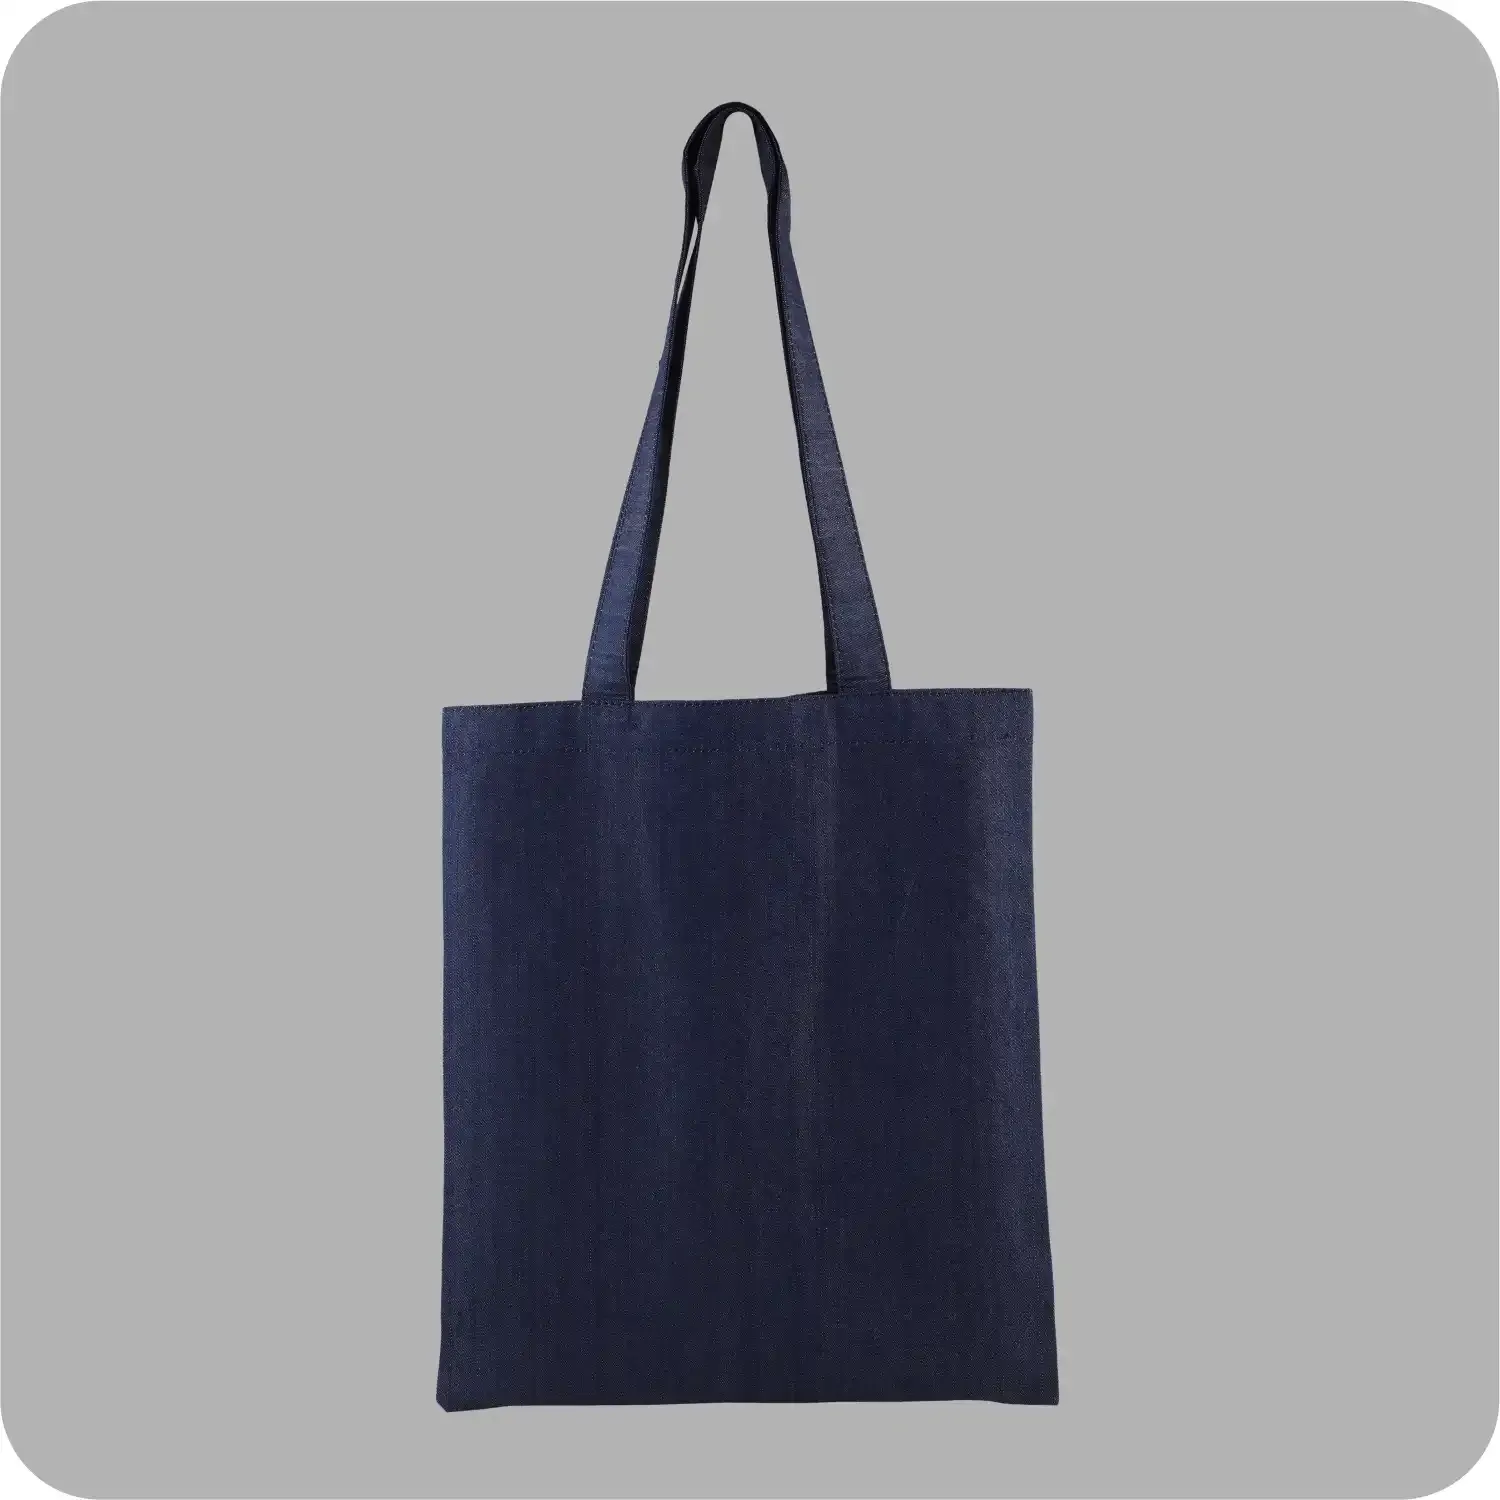 Denim Tote Bag Shopping Bag Promotional Bag Conference Bag Institutional bag-01